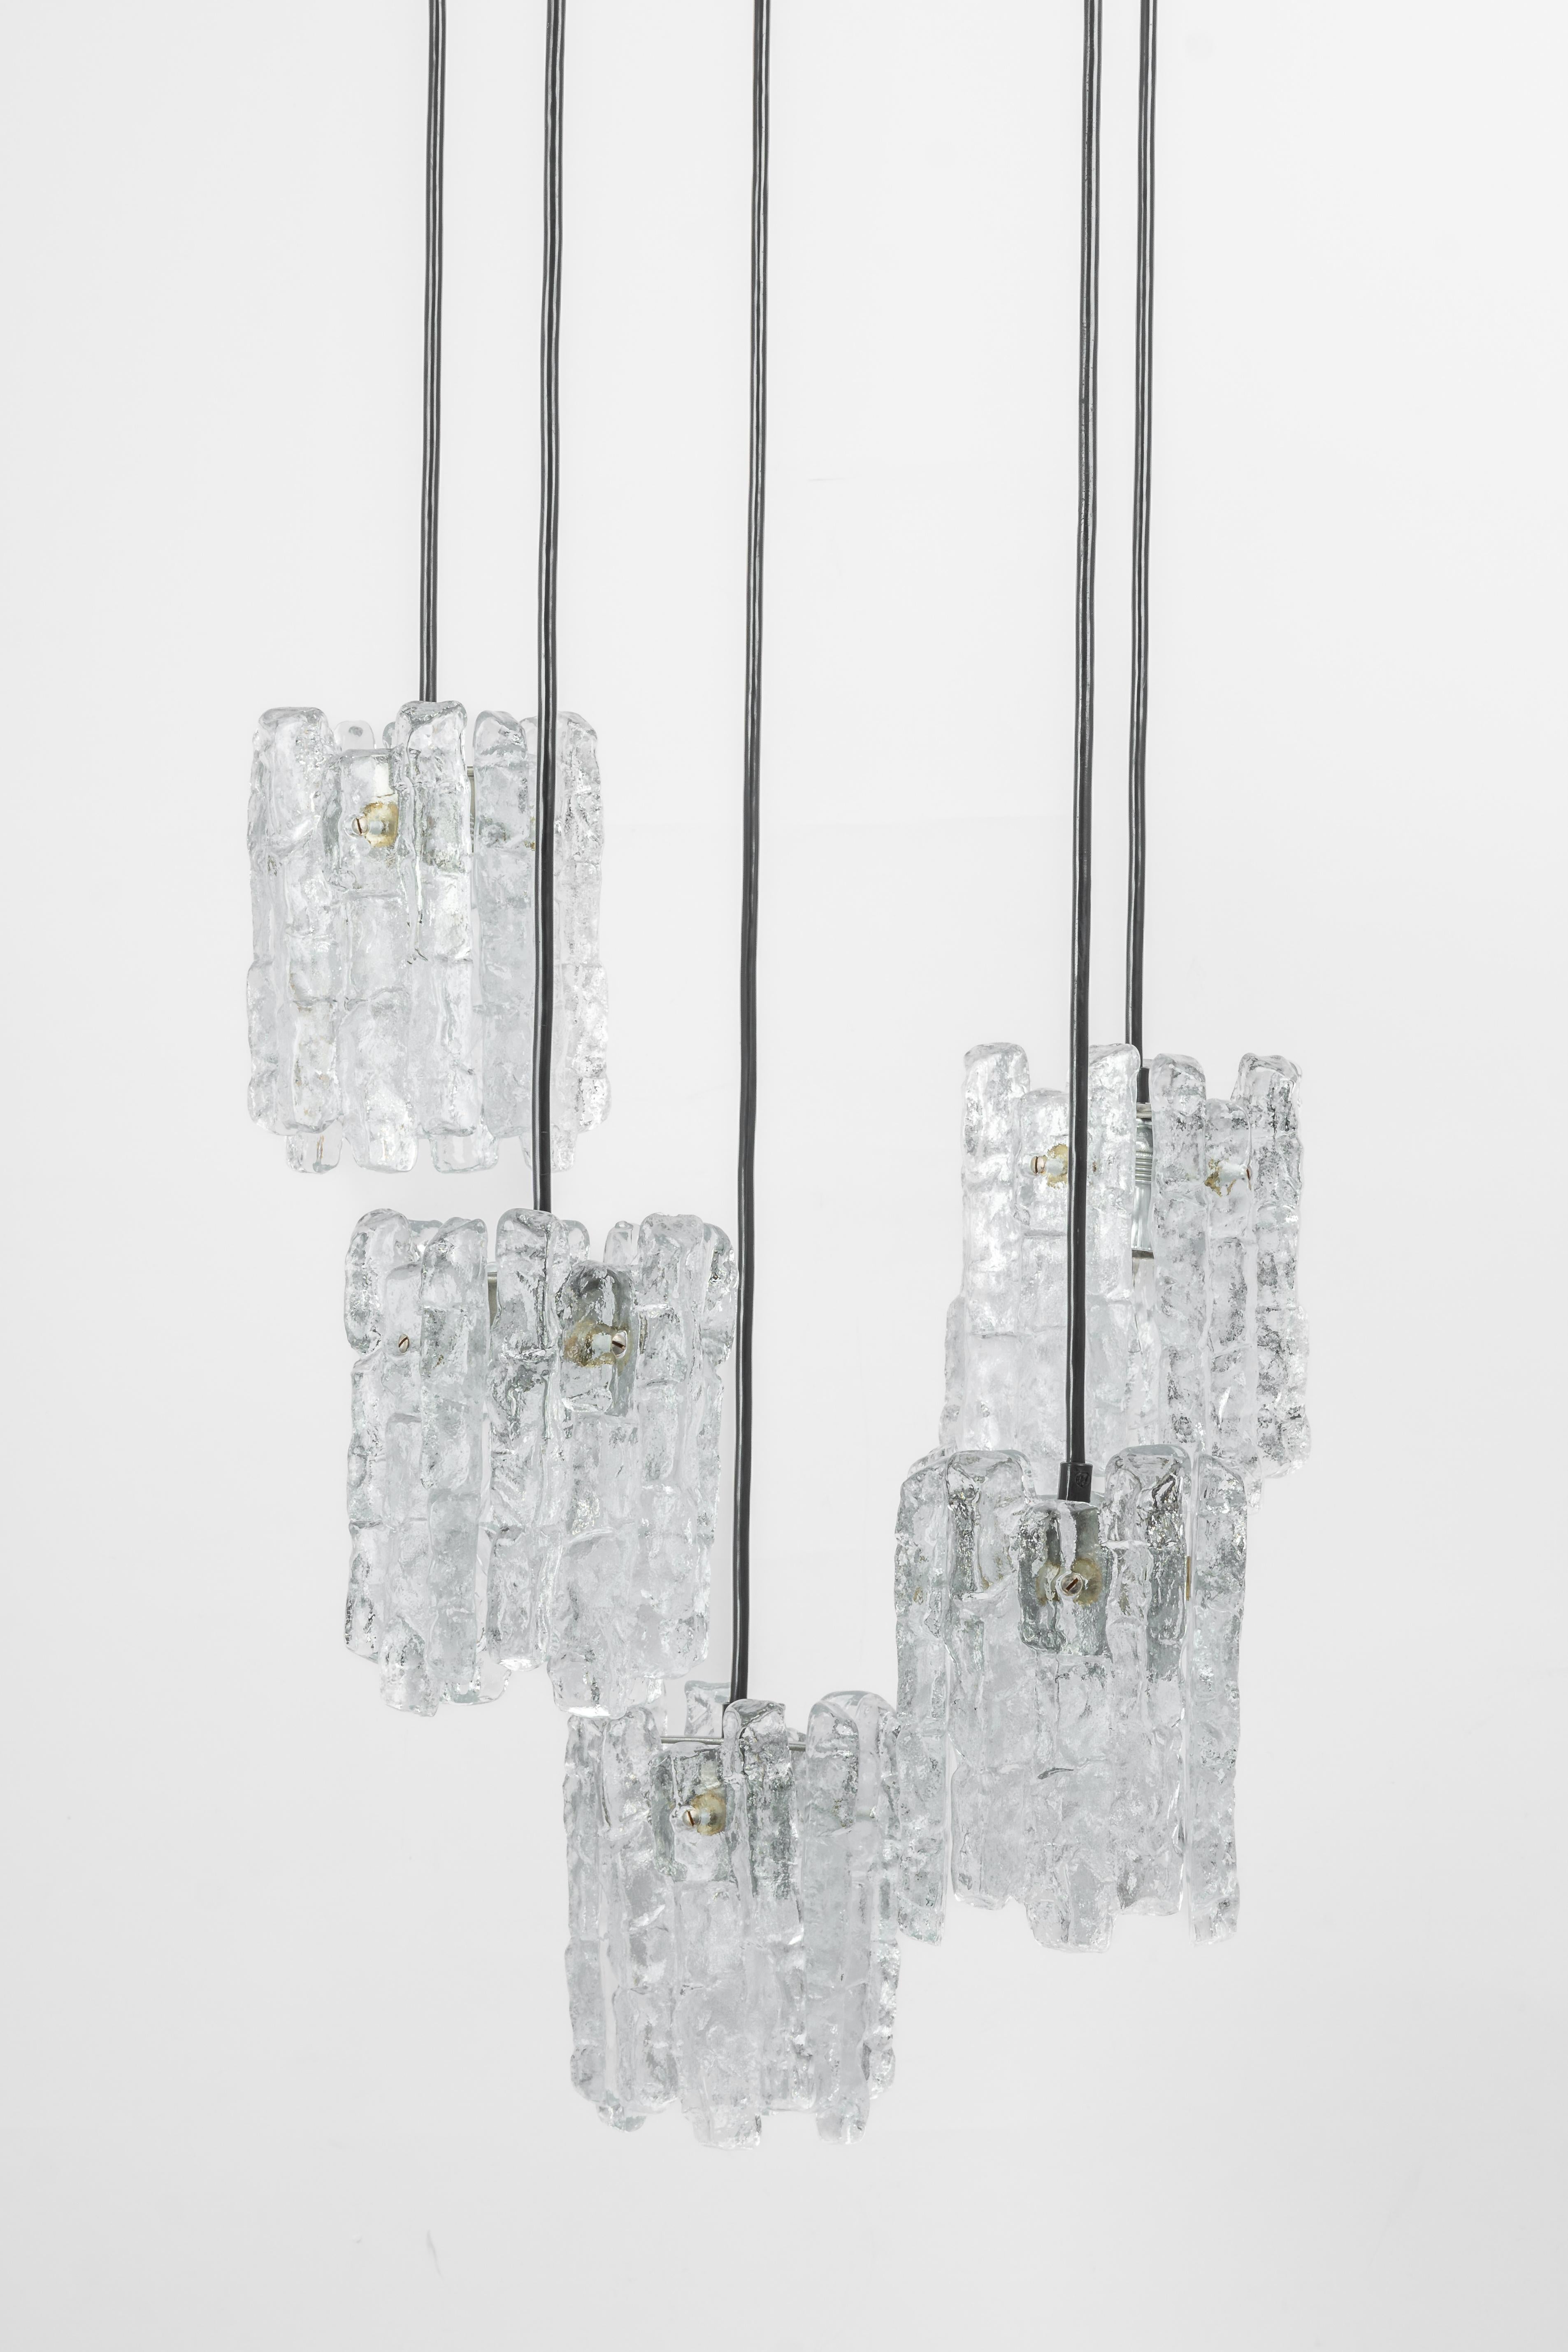 Ein spezieller, kaskadenförmiger Kronleuchter, entworfen von Kalmar, hergestellt in Österreich, ca. 1970er Jahre, mit fünf Gruppen strukturierter Murano-Gläser.
Atemberaubender Lichteffekt.
Fassungen: 4 x E14 Glühbirne klein. (je 40 W